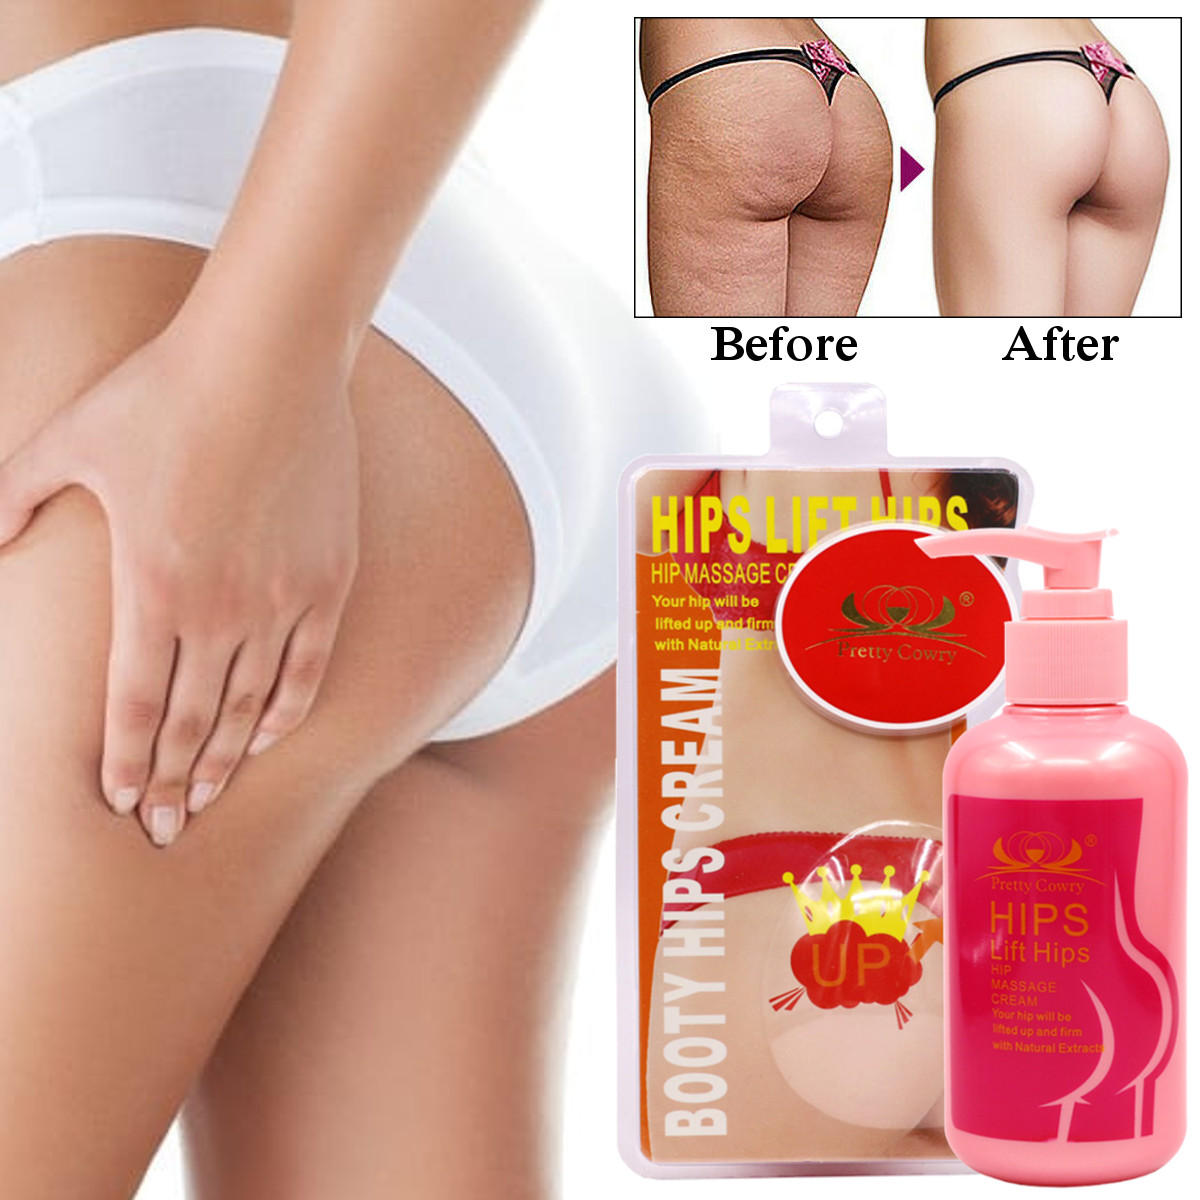 200g Butt Lift Firming Enlargement Slimming Cream big glutes Hip Up buttocks Enhancement